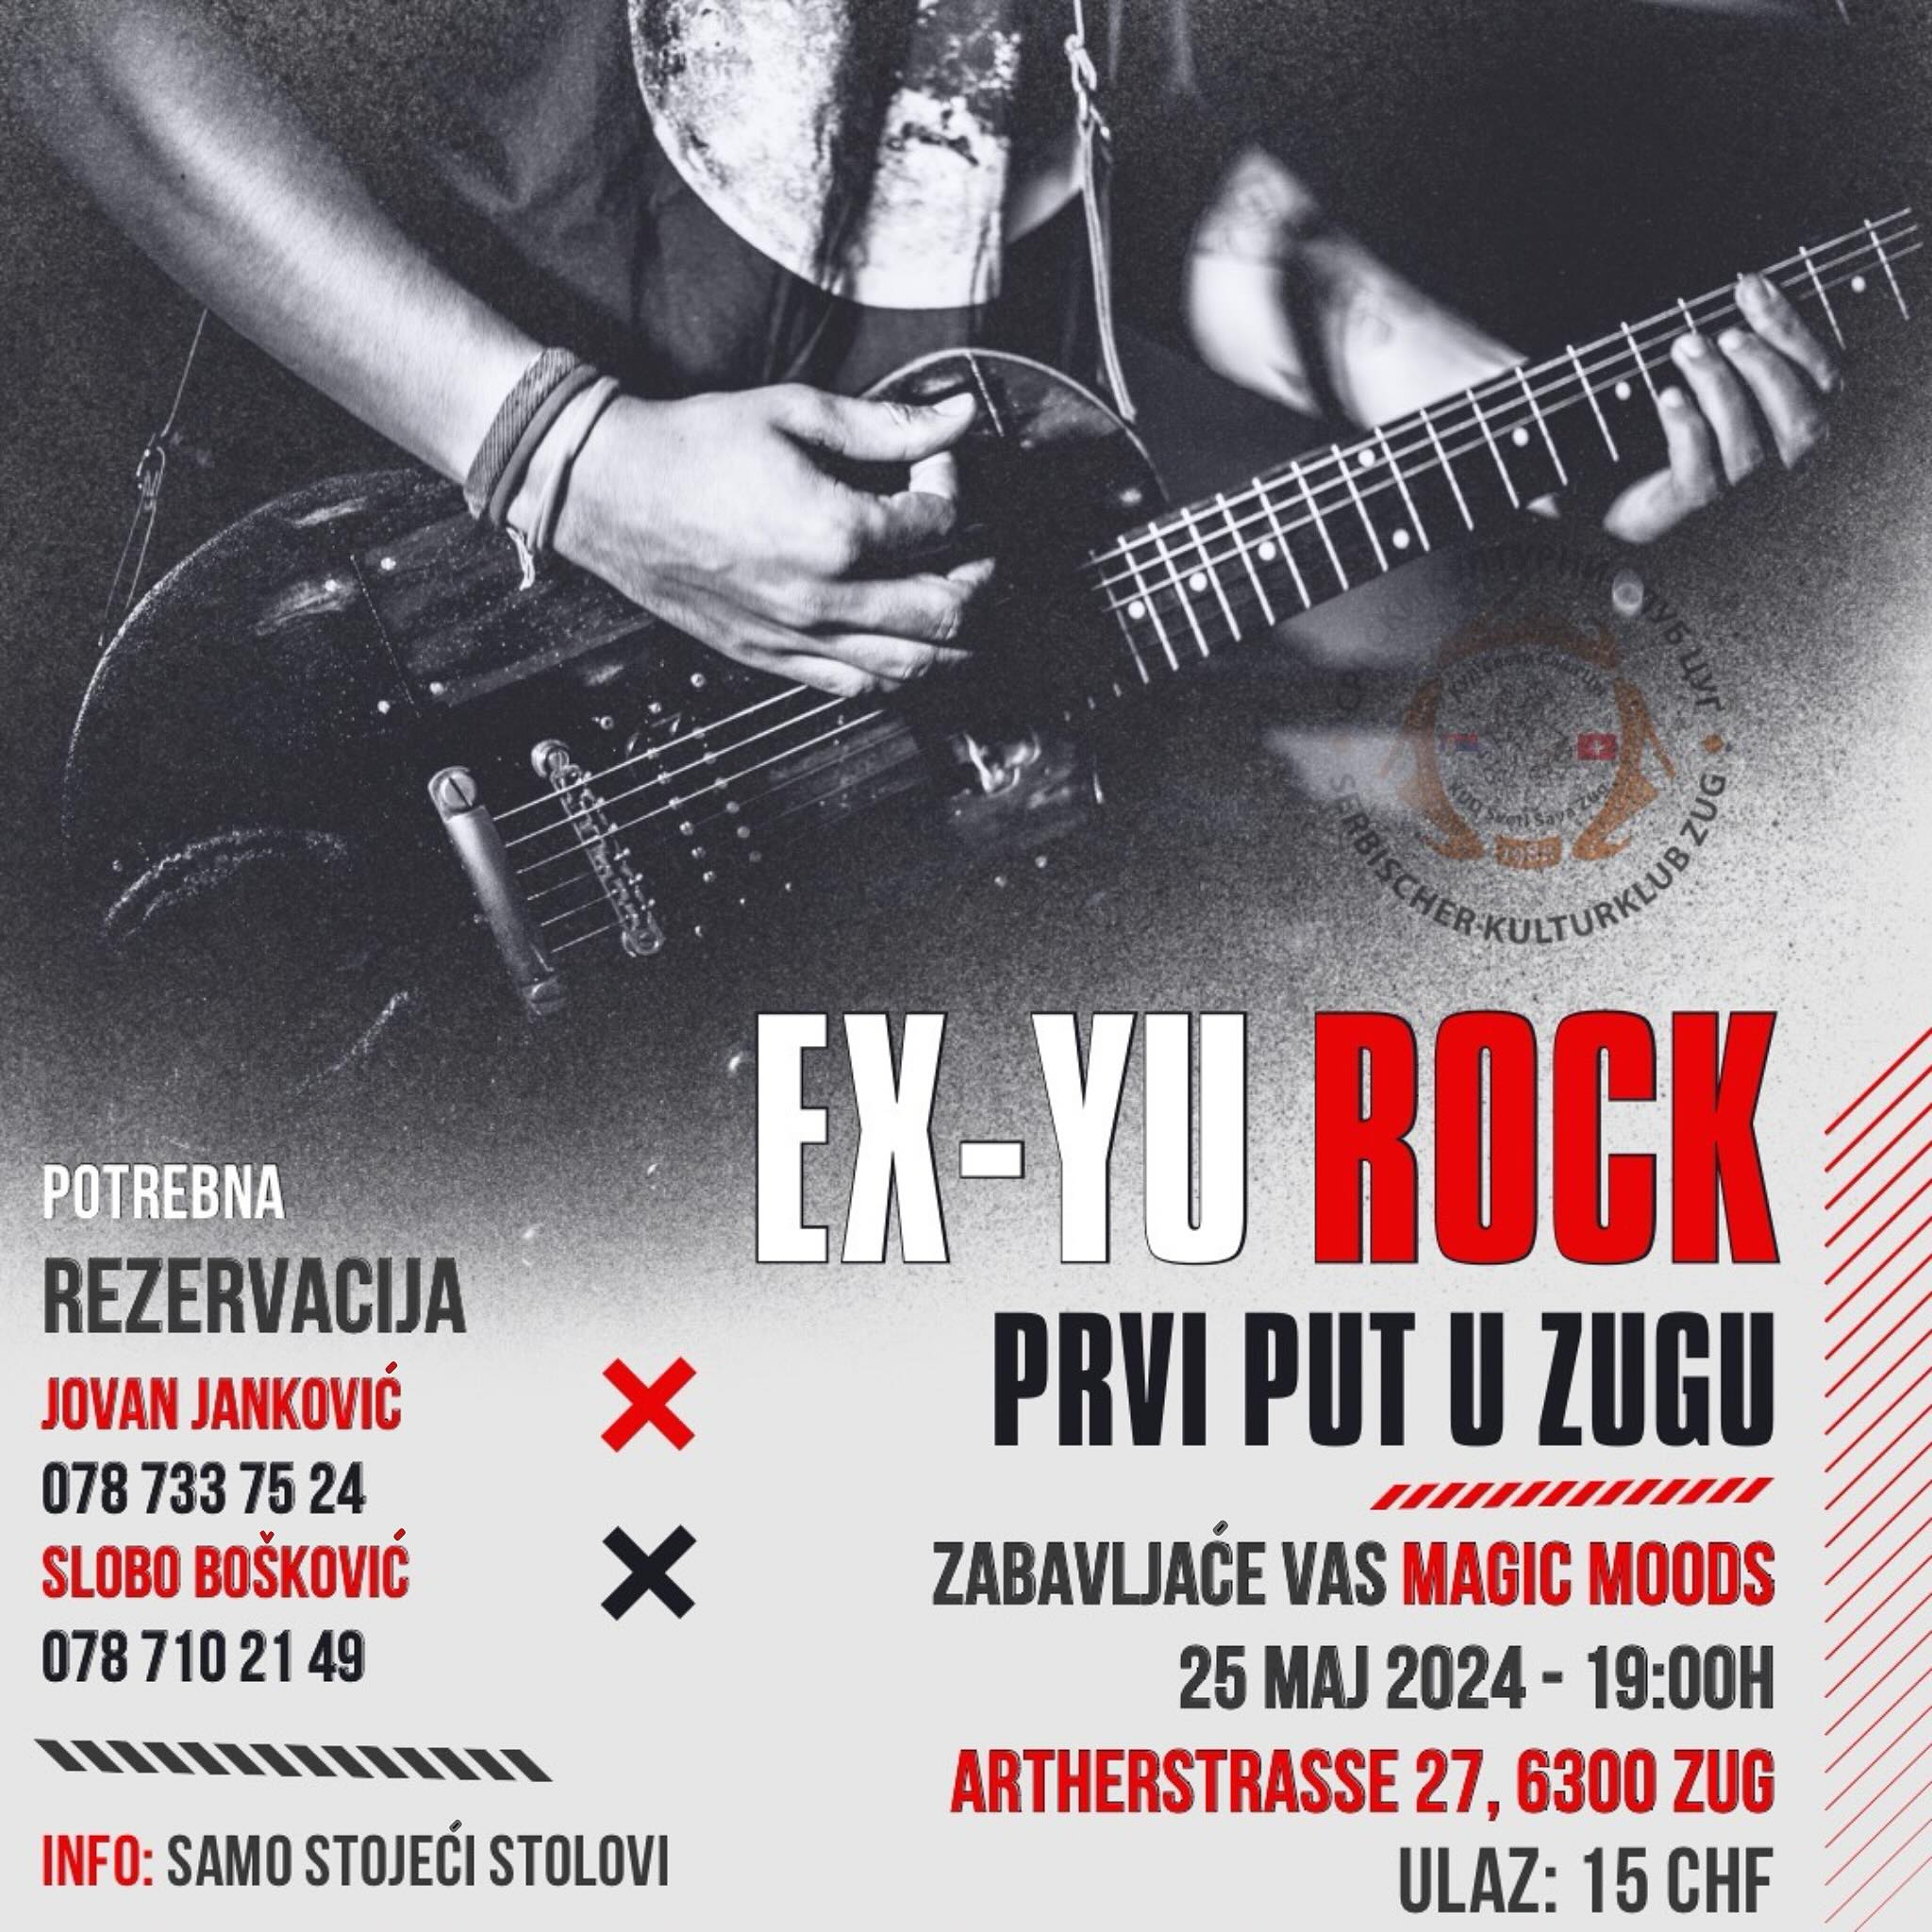 Ex-yu rock žurka KUD Sveti Sava u Cugu